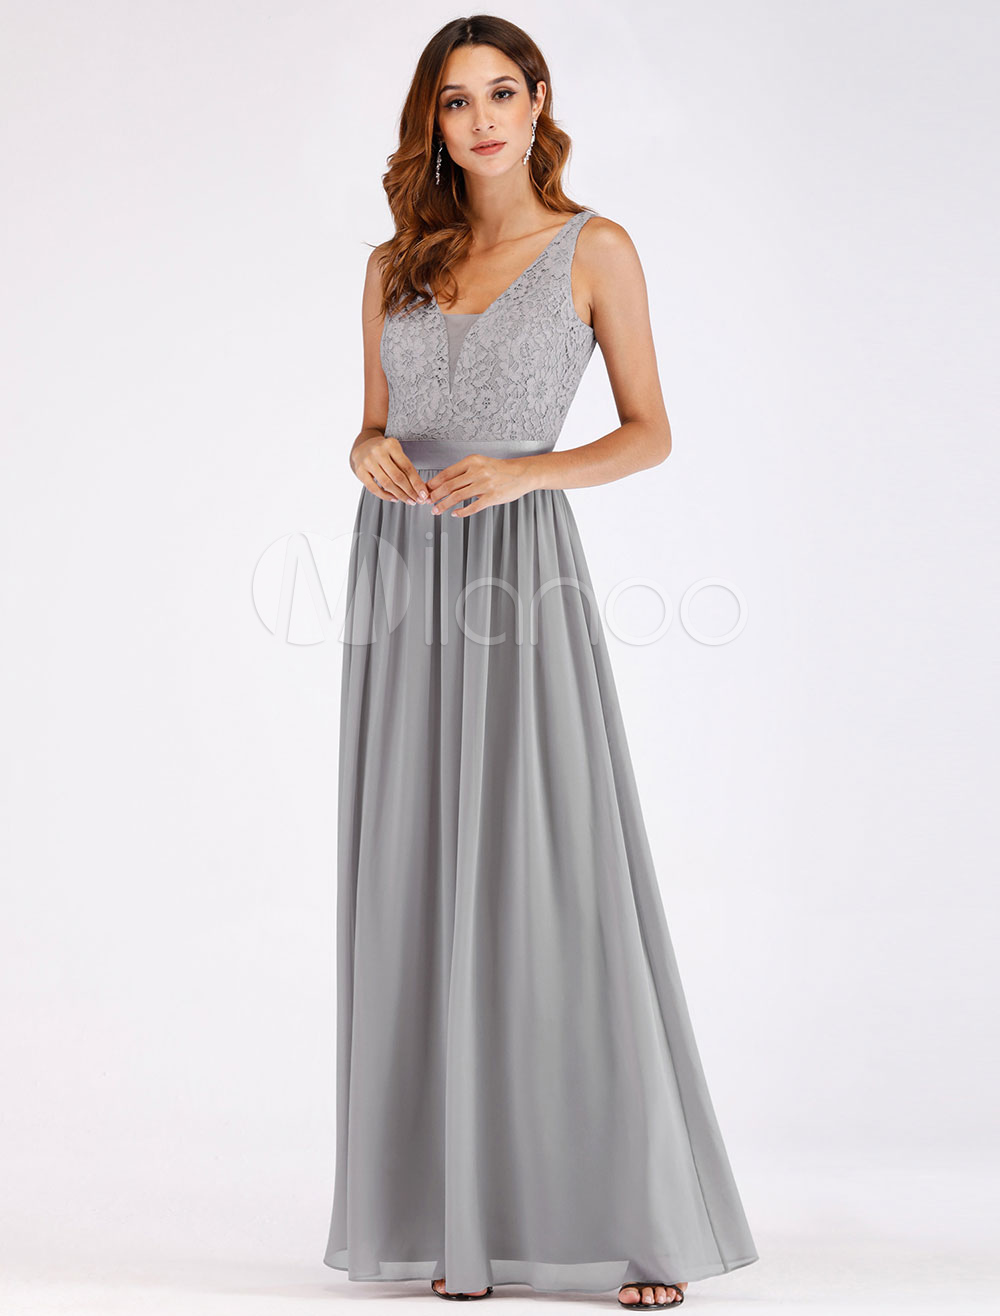 Light Gray Prom Dresses lace Chiffon V Neck Sleeveless Maxi Formal ...